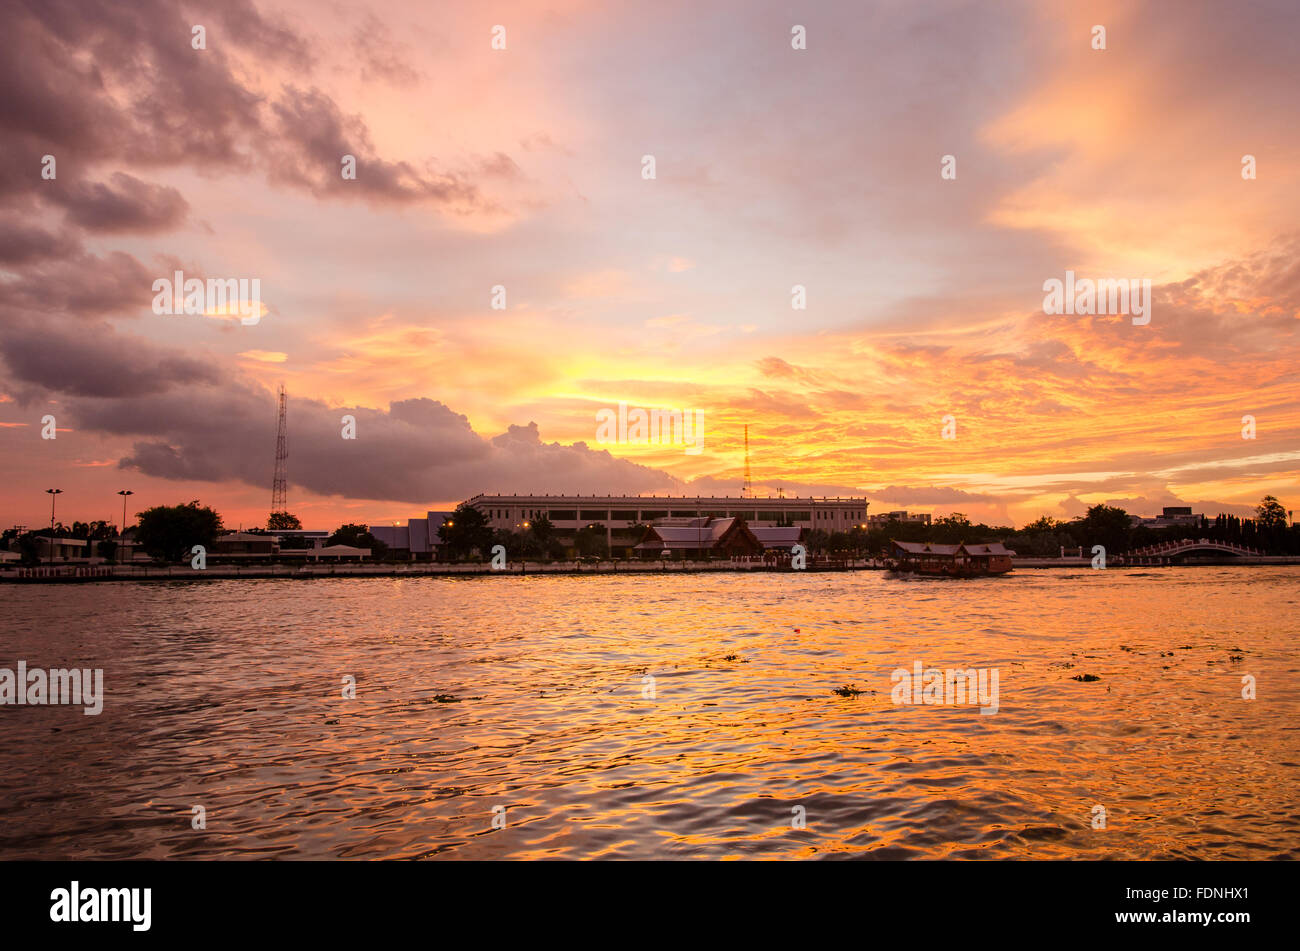 Bangkok, beautiful dramatic sunset on river Chao Phraya Stock Photo